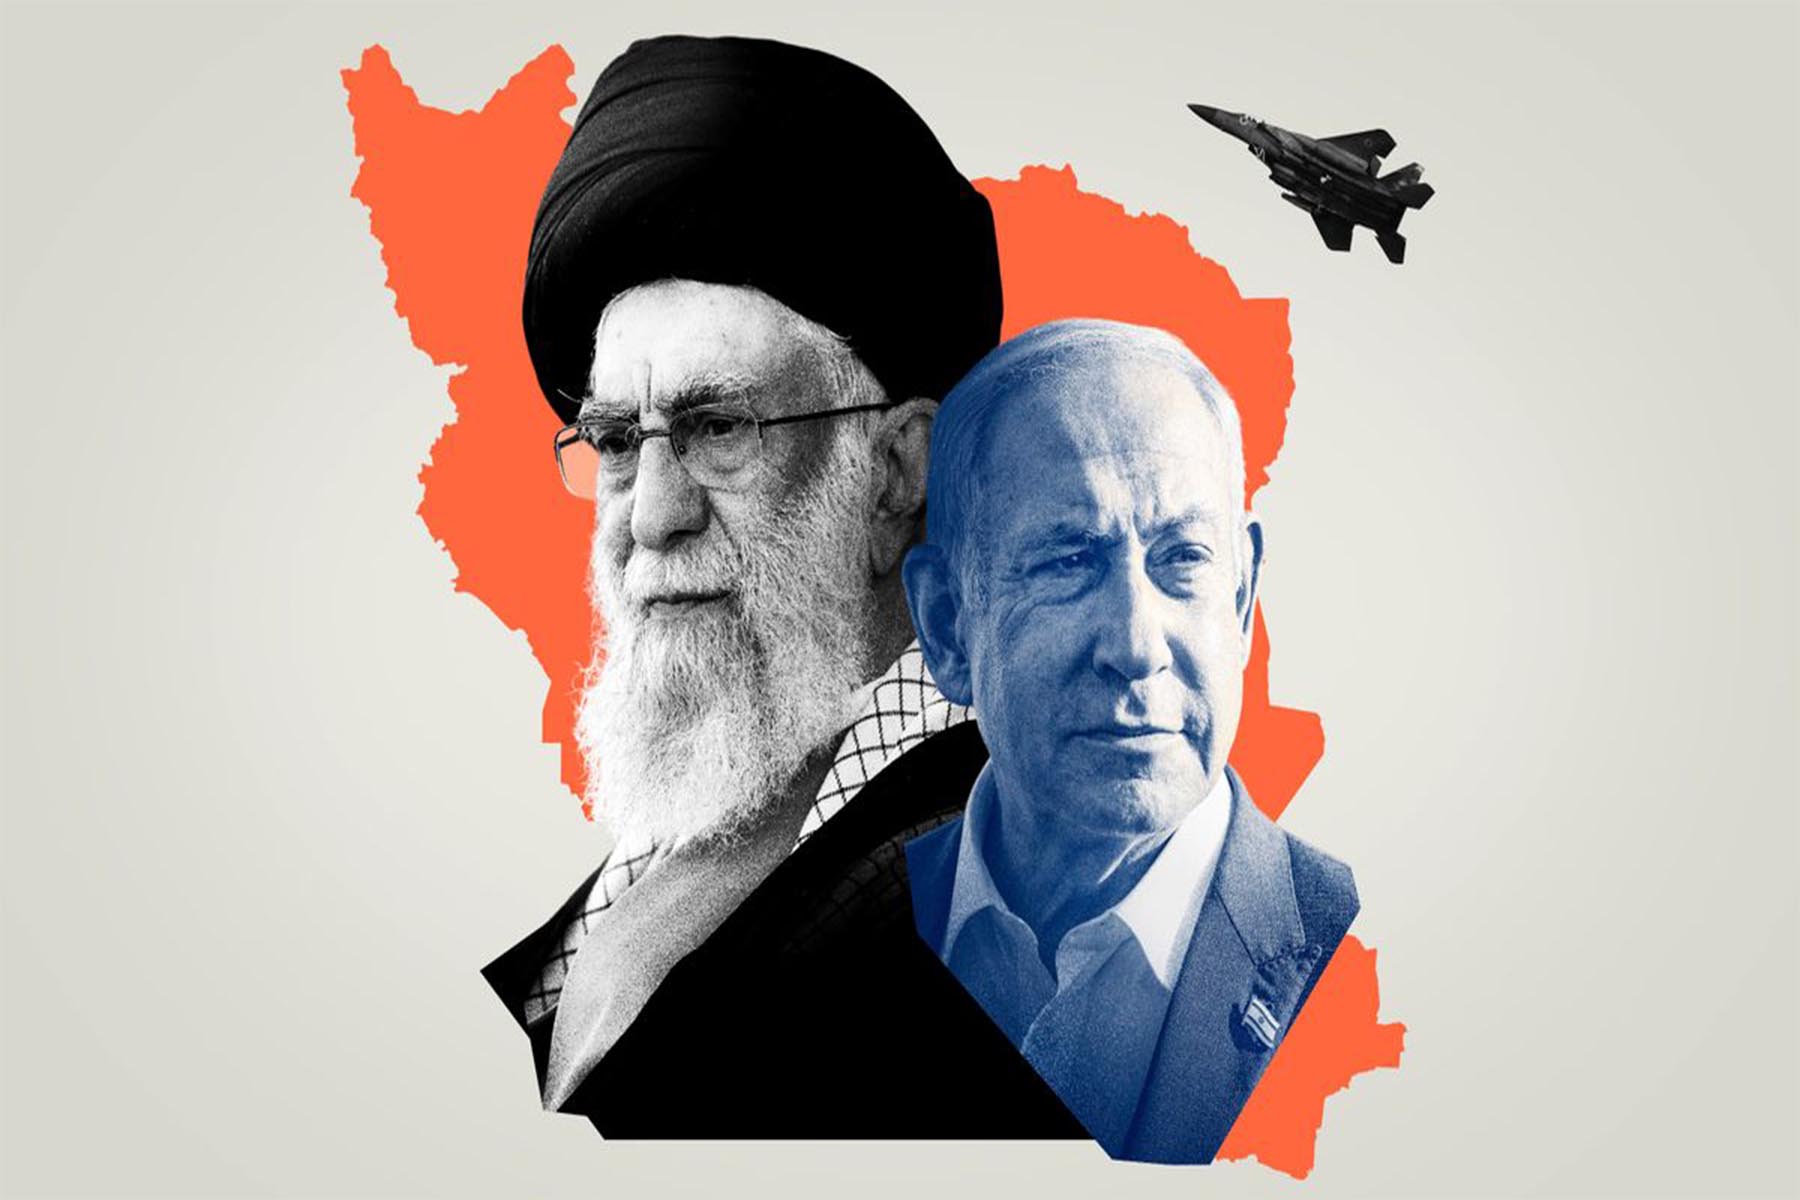 آکسیوس: اسرائیل کارگروه های برنامه هسته ای جمهوری اسلامی را دوباره ایجاد می کند